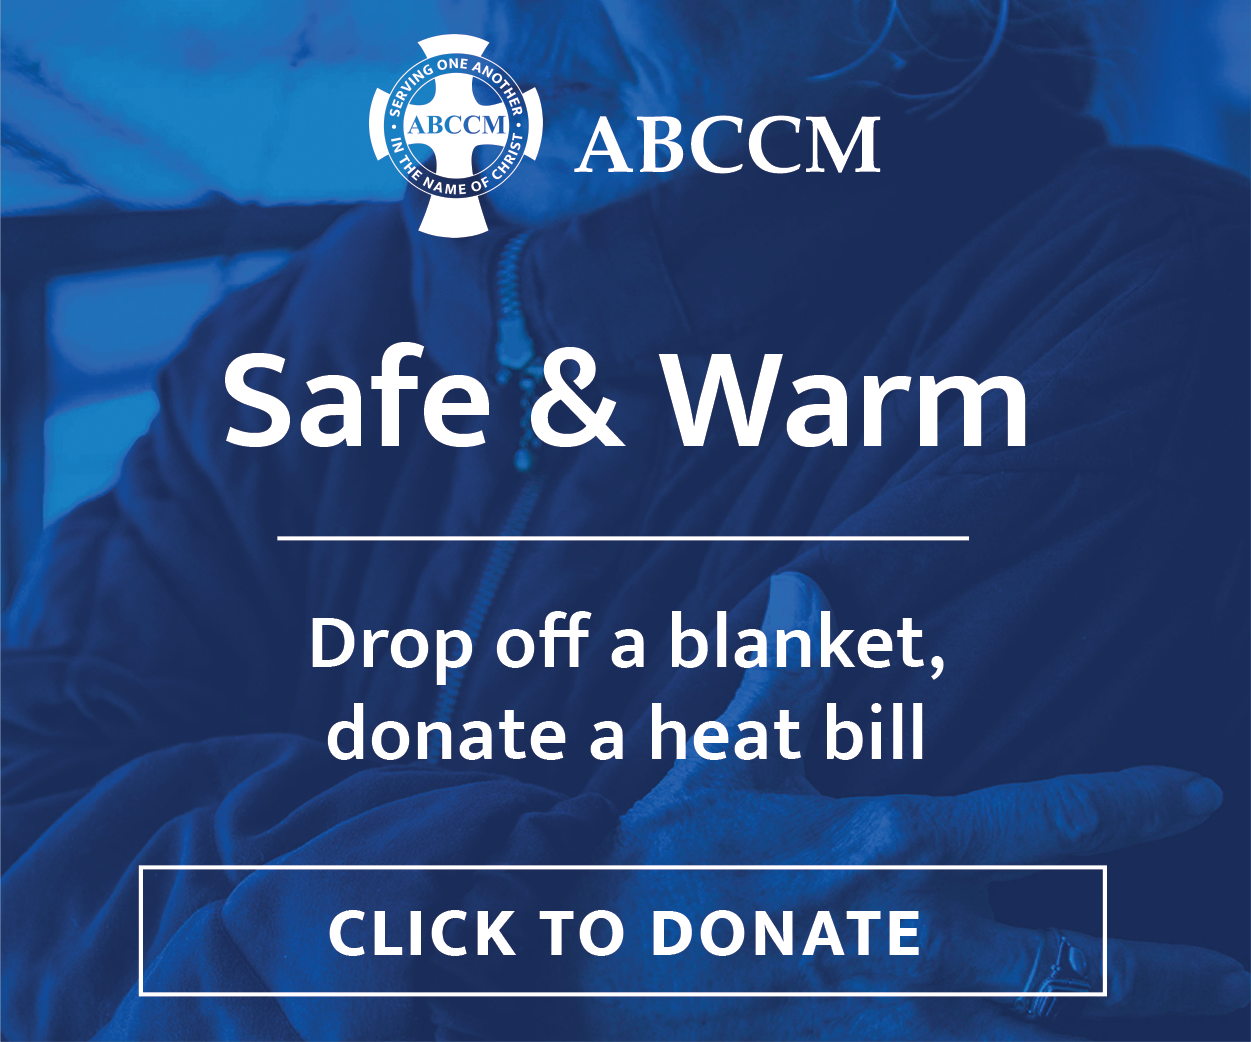 ABCCM_safewarm_300x250_dropoff_heatbill.png